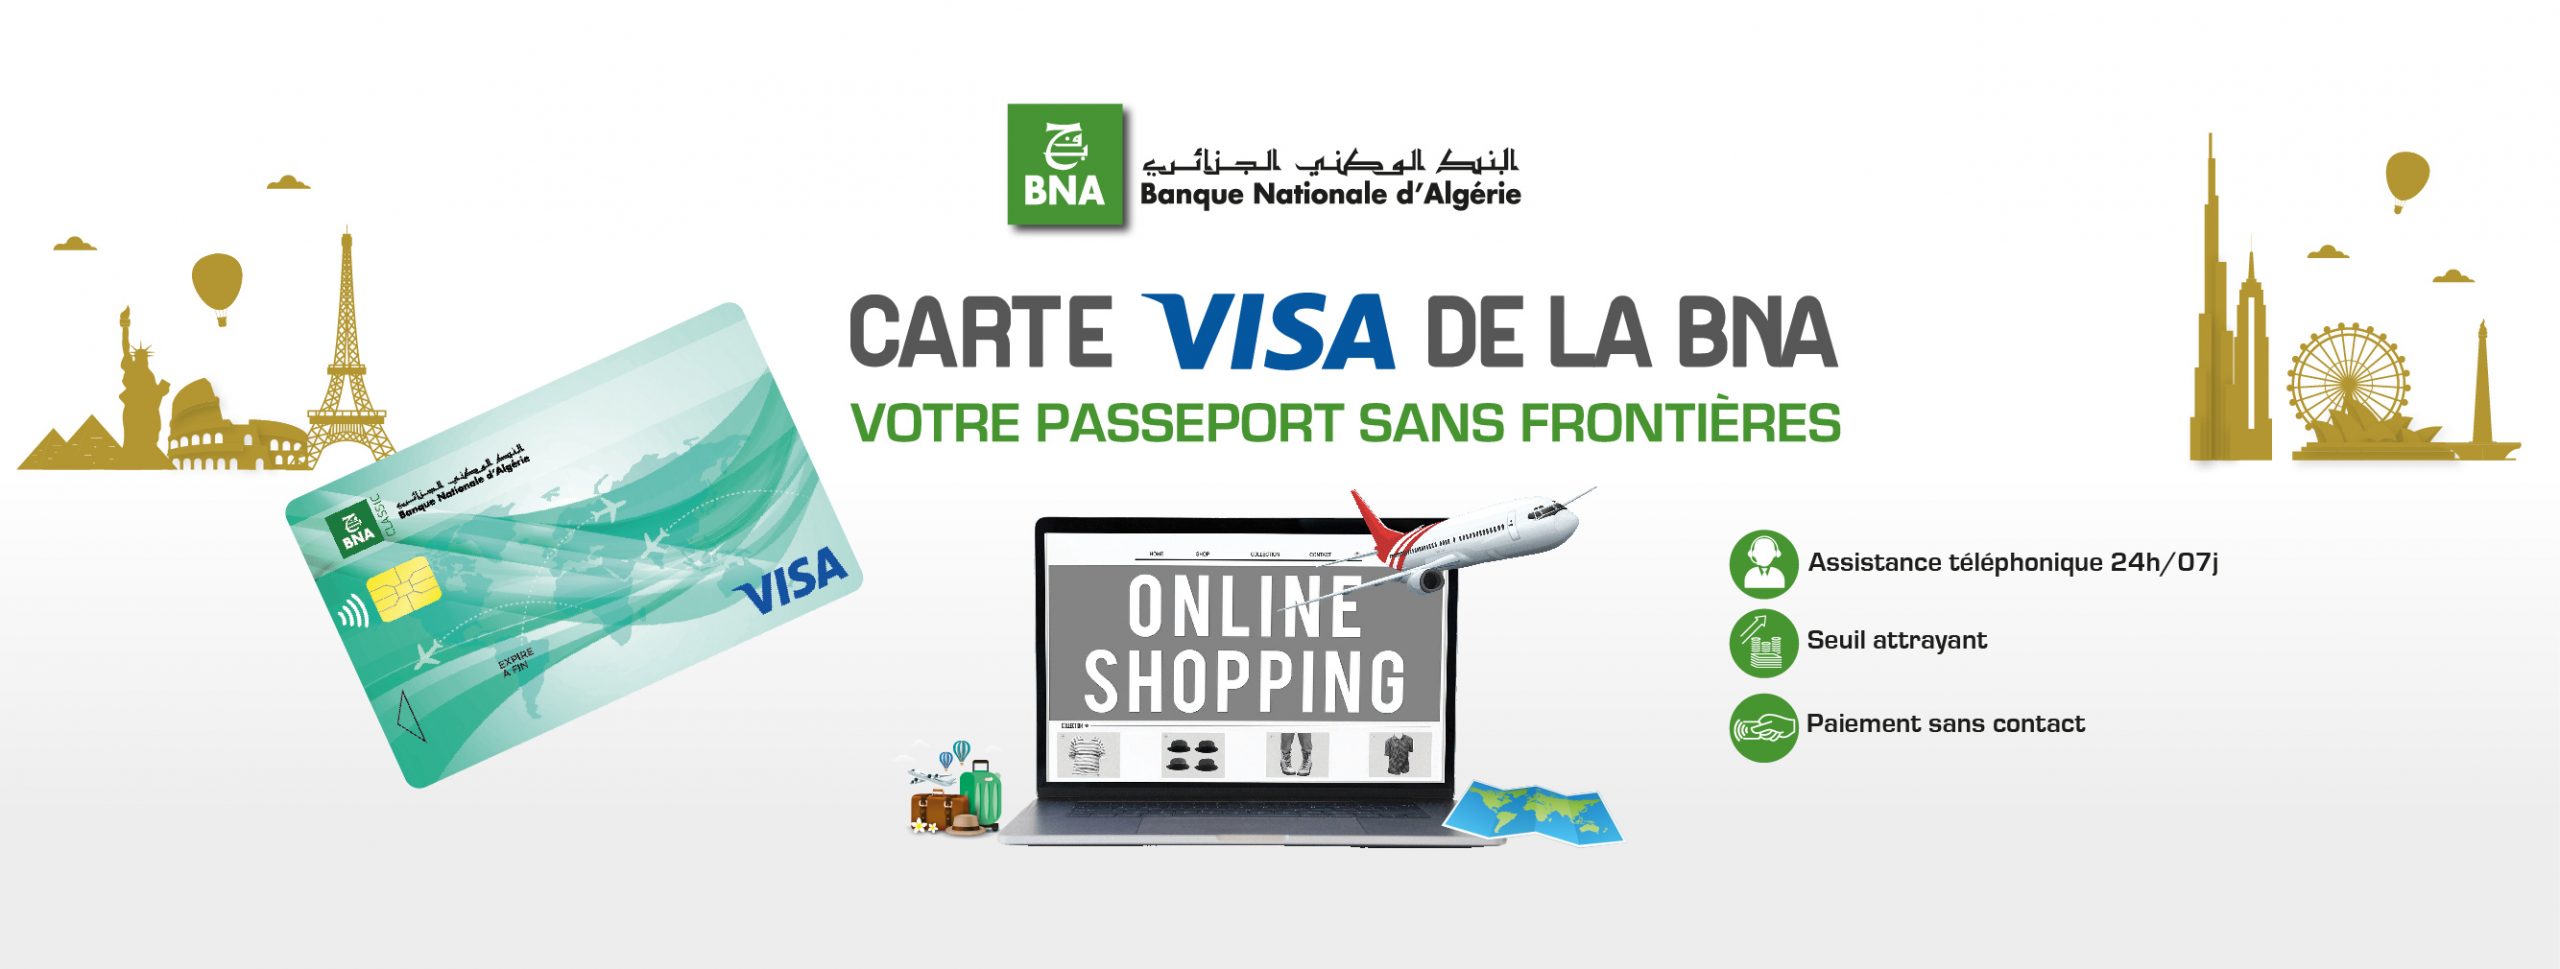 Banque Nationale d'Algérie